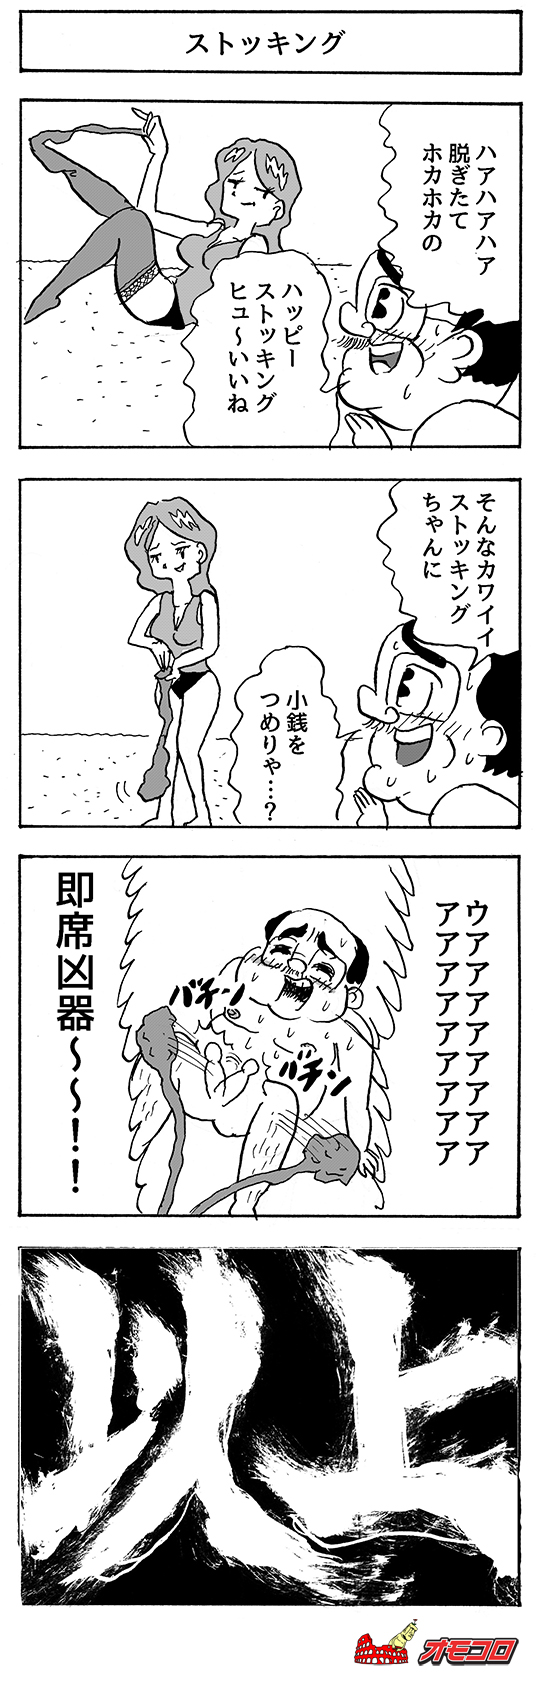 【4コマ漫画】ストッキング